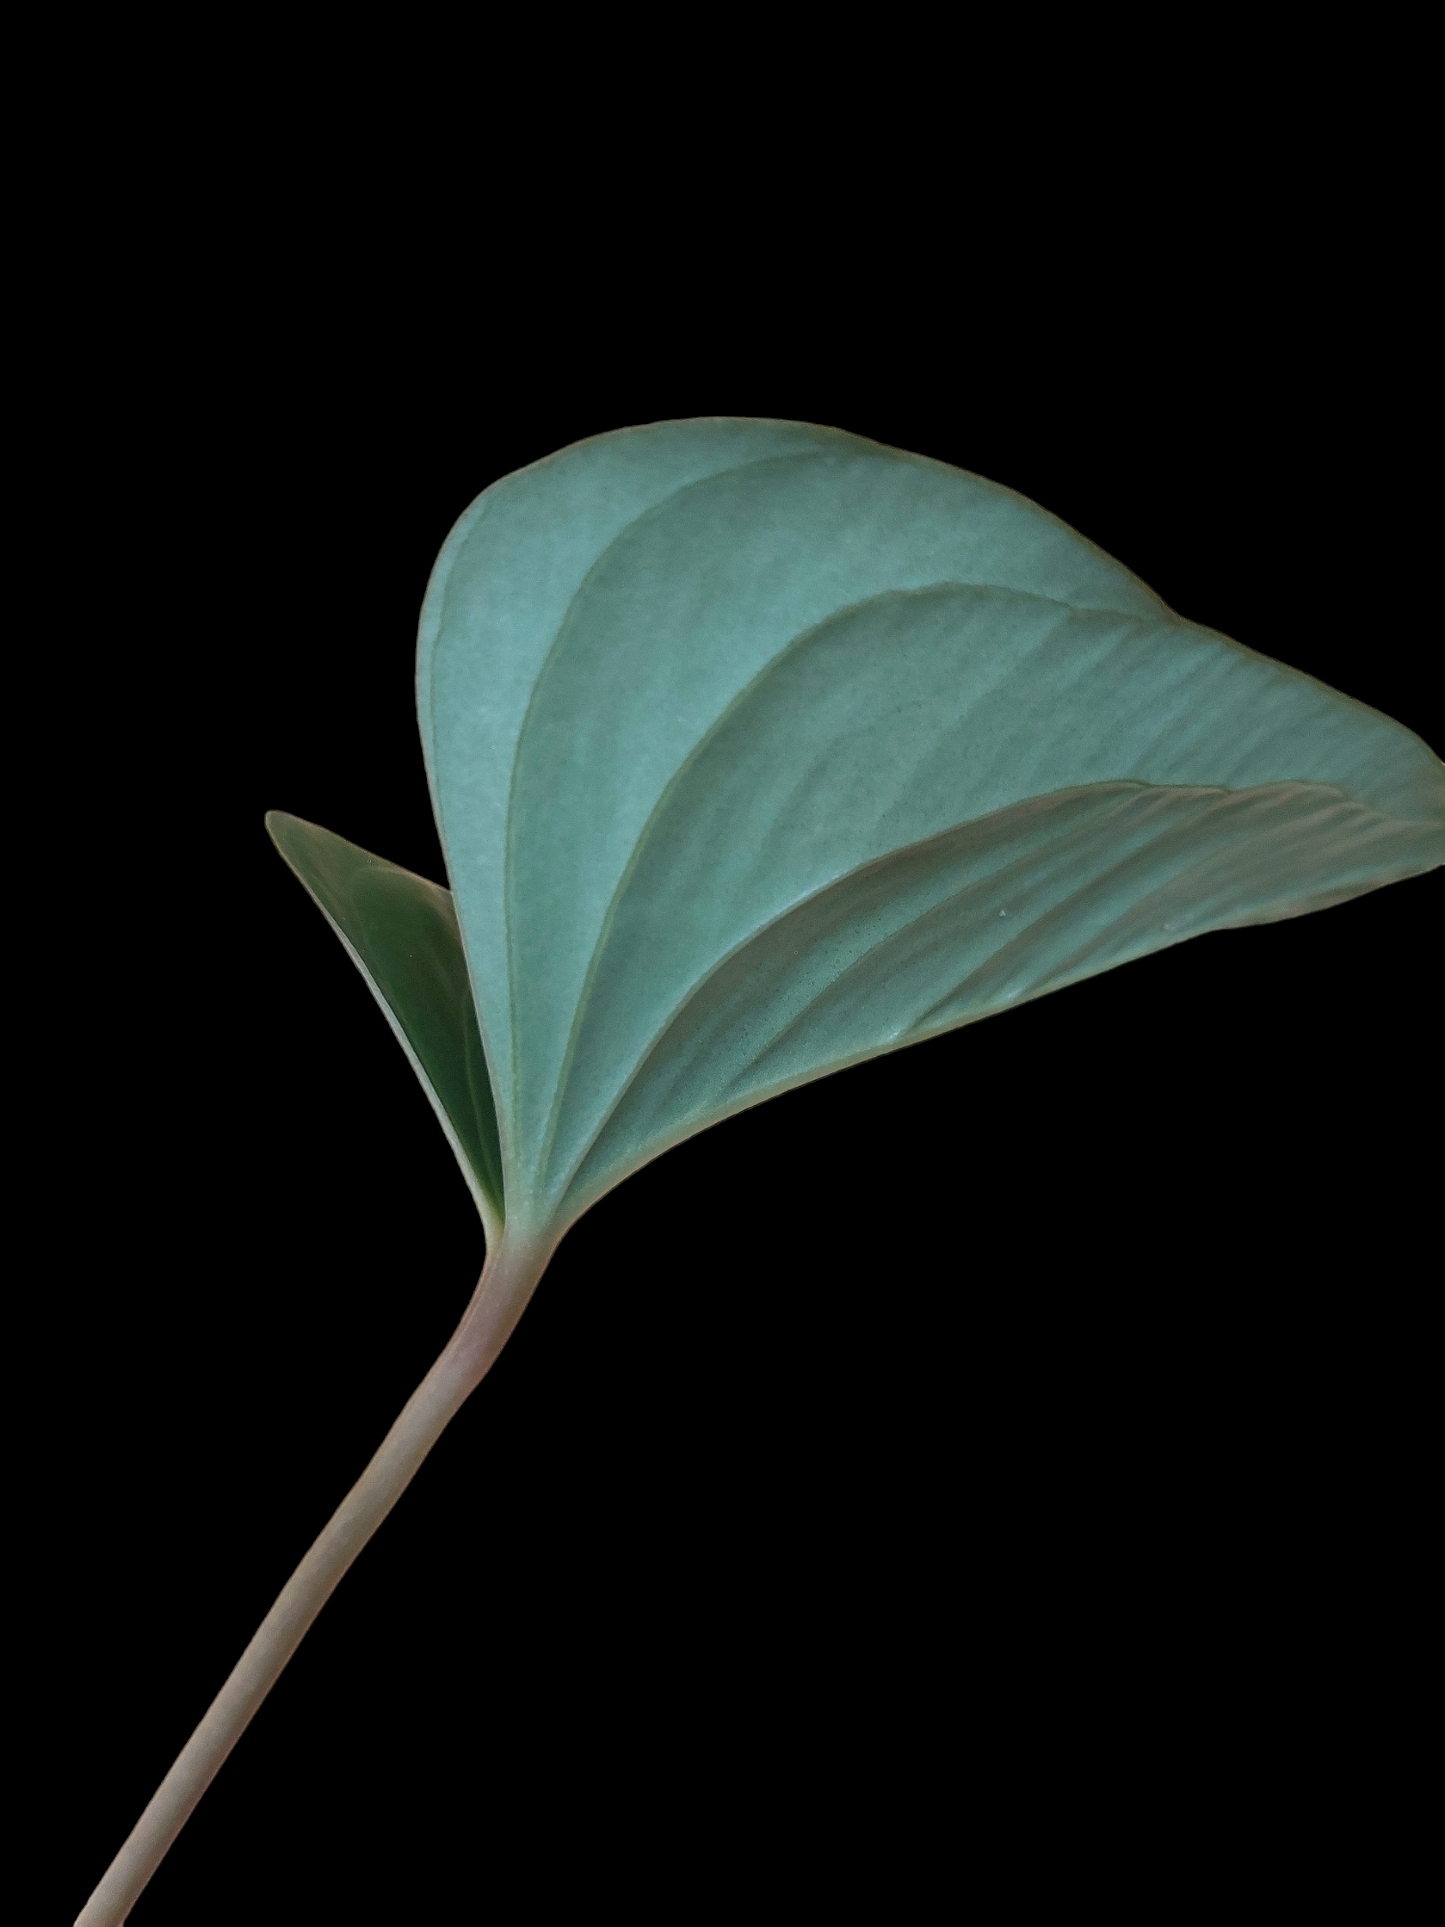 Anthurium sp. 'Indian arrow' (EXACT PLANT)